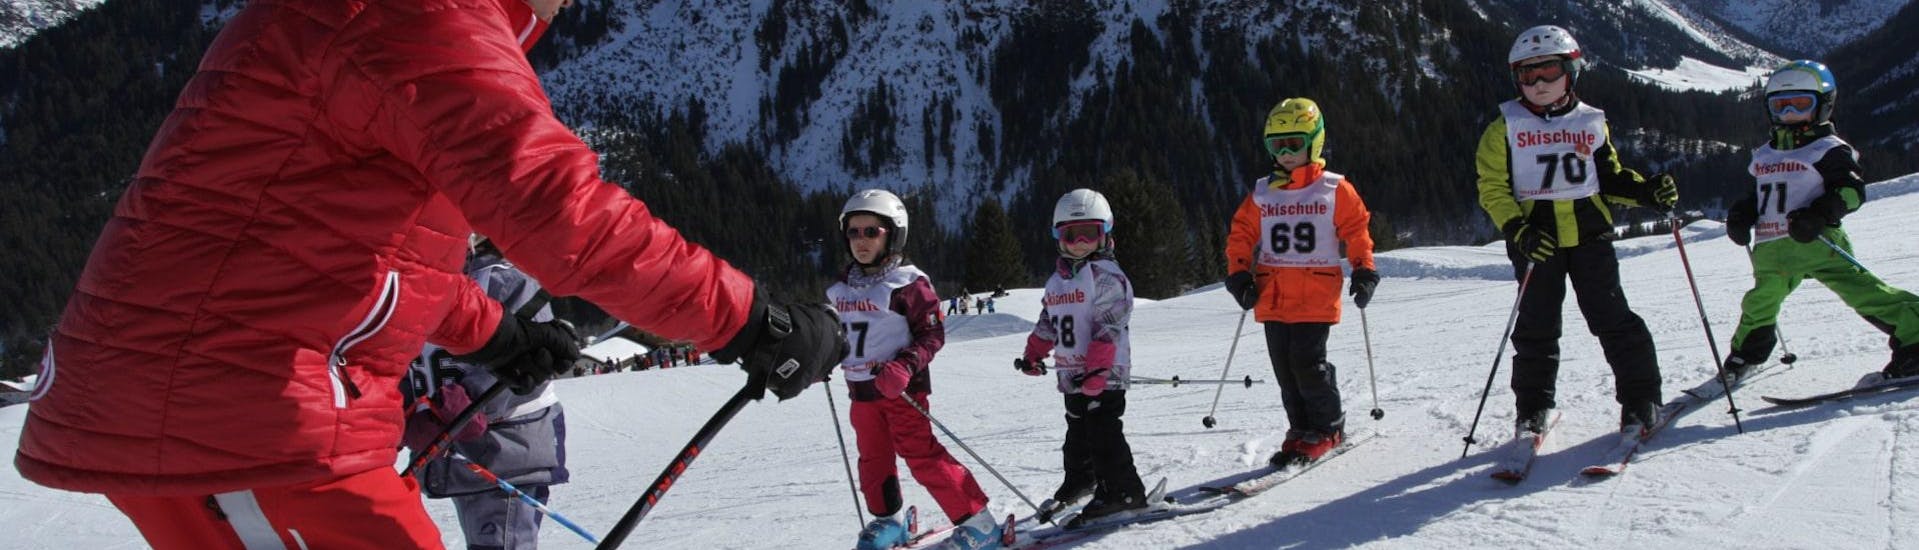 Skilessen voor Kinderen (5-12 jaar) voor Gevorderden.